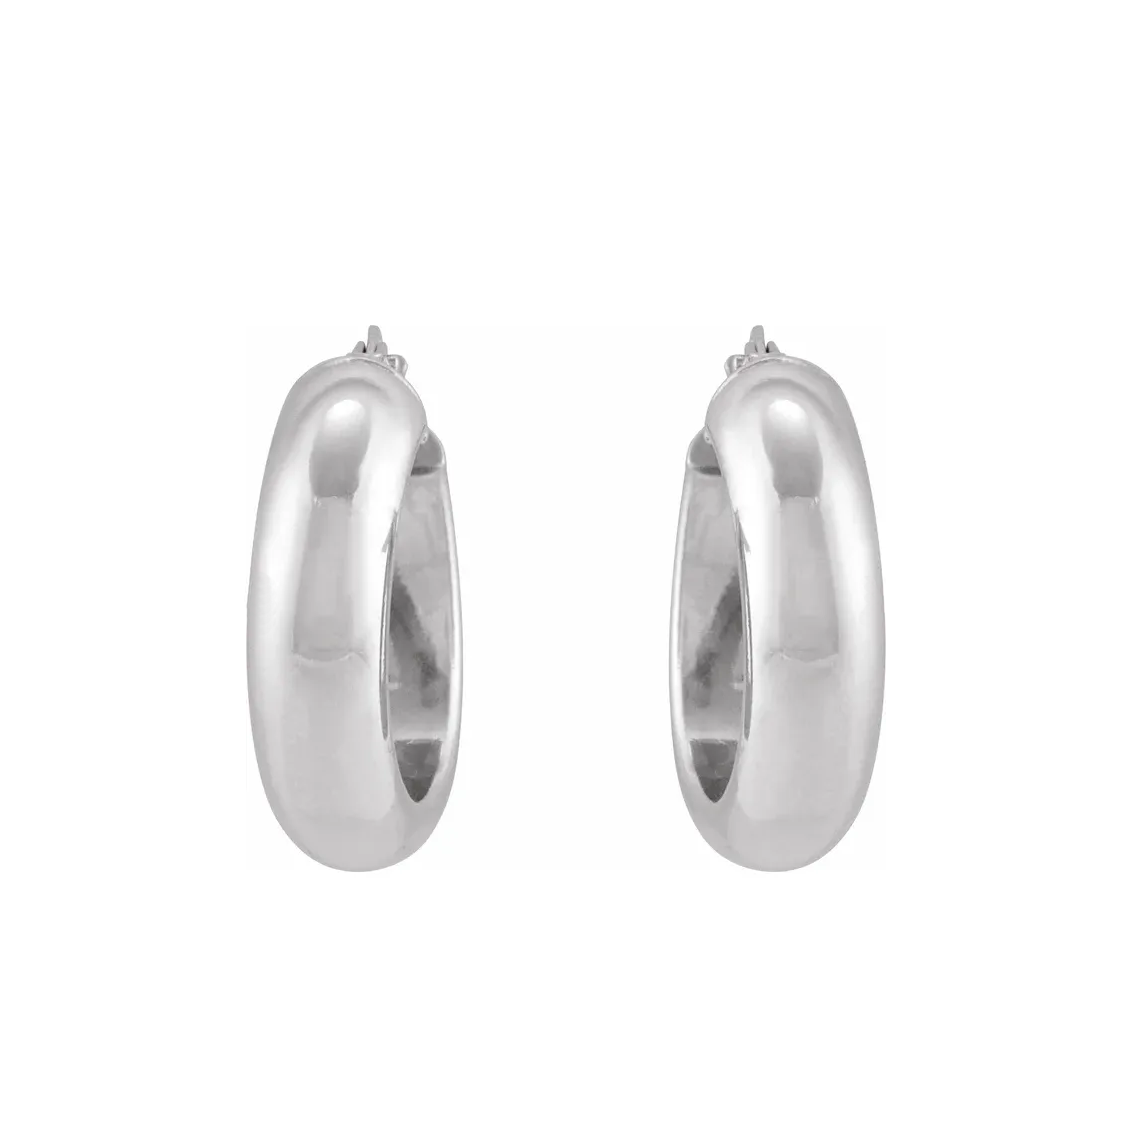 Wide Silver Hoop Earrings 17mm